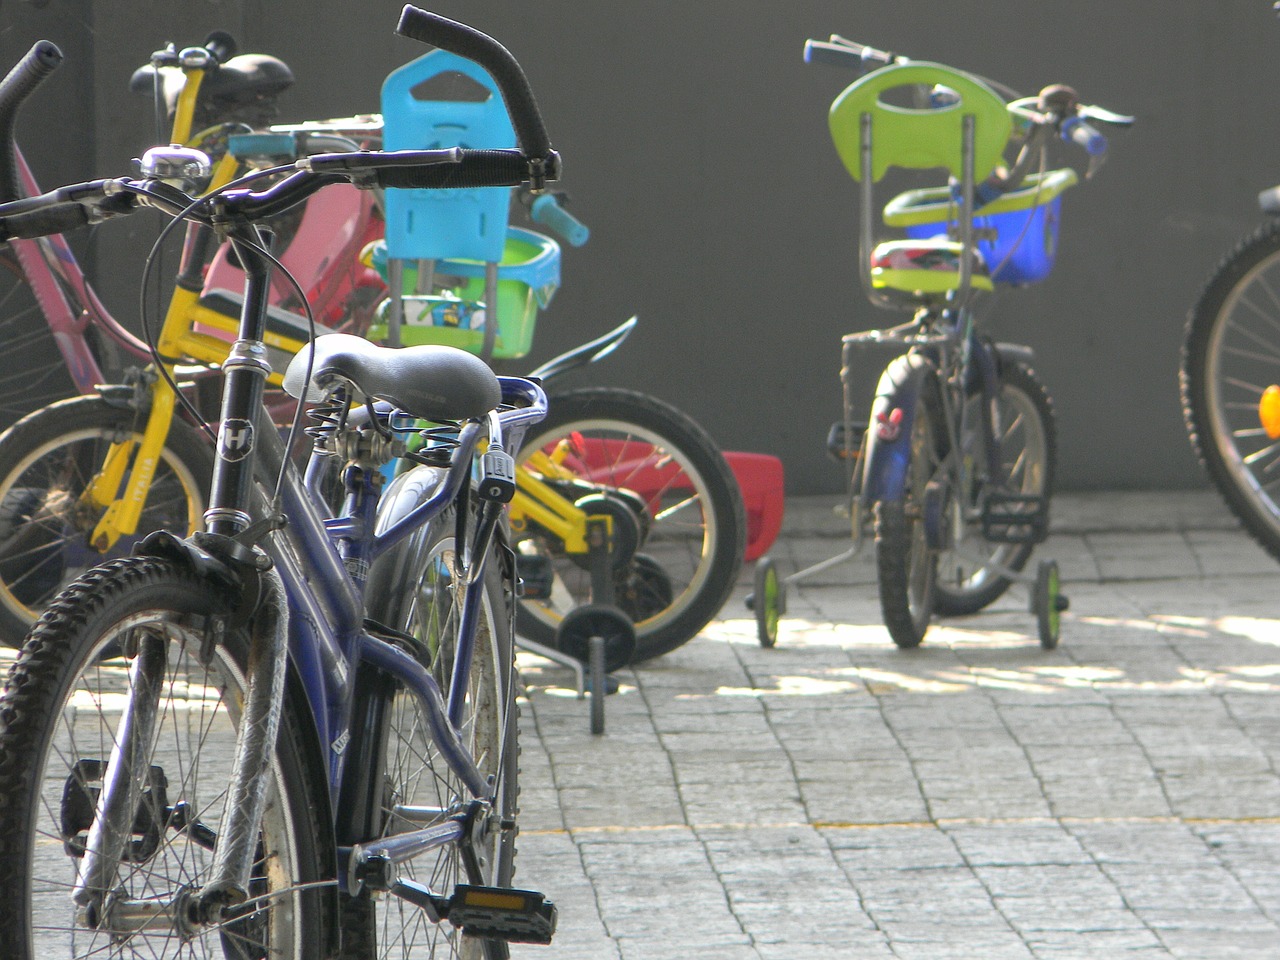 Dečja sedišta za bicikl